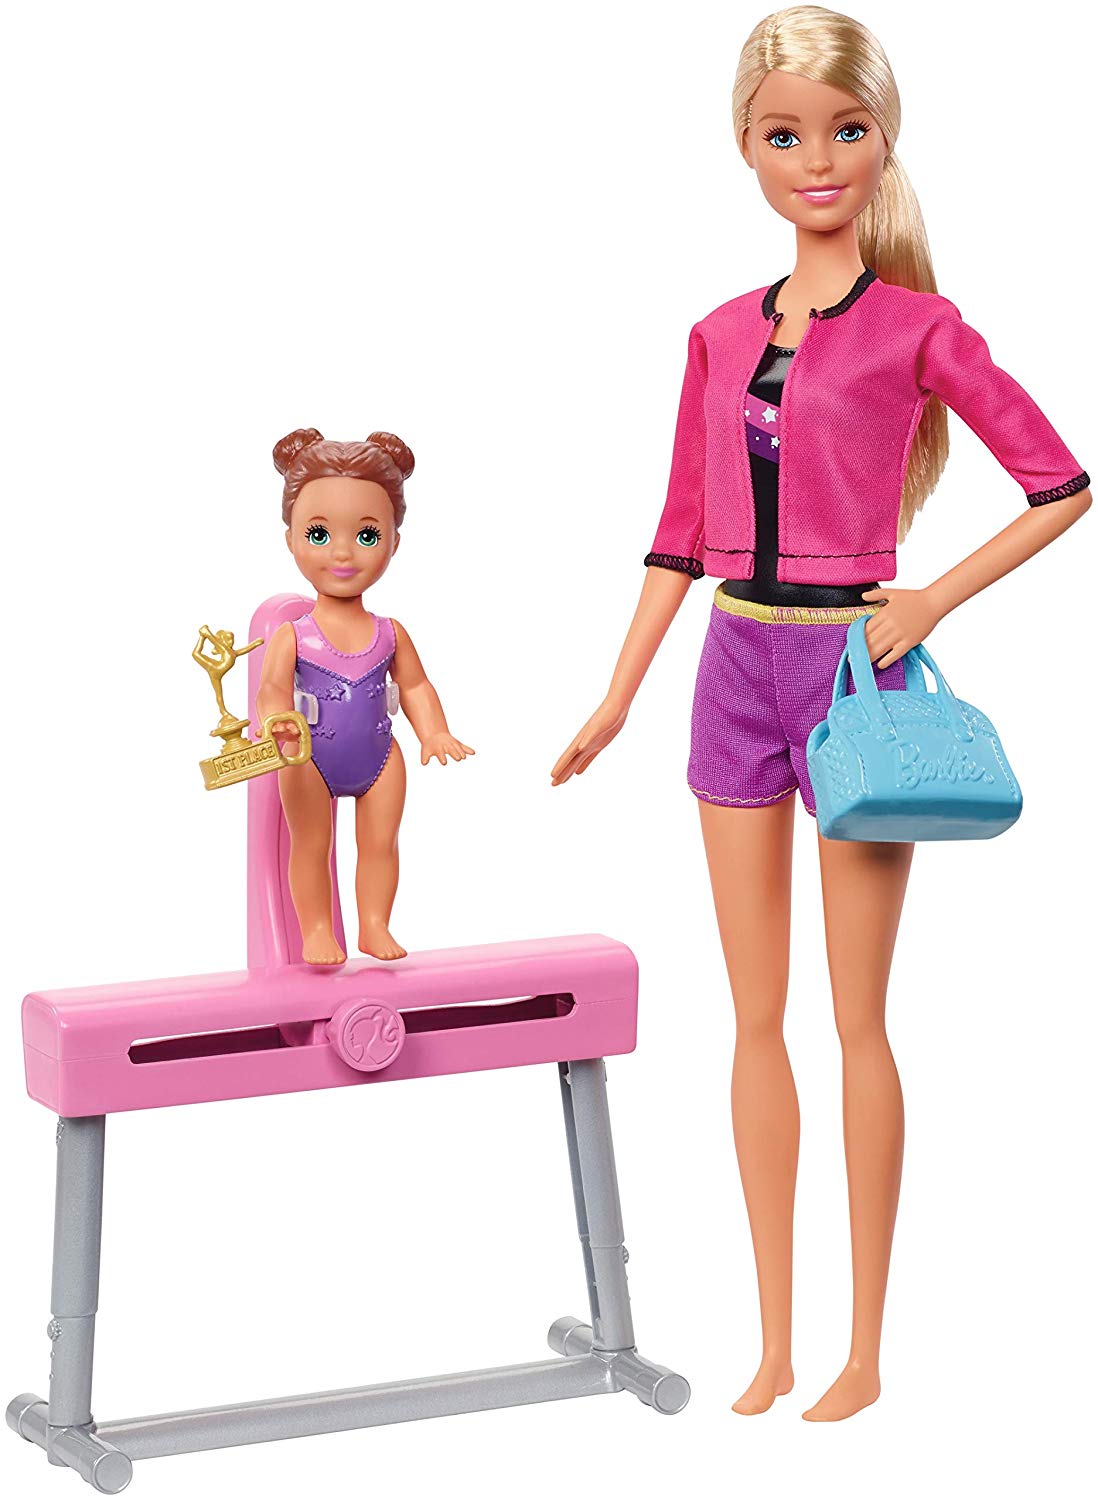 Mattel Barbie Fxp39 Barbie Playset, Multi-Colour